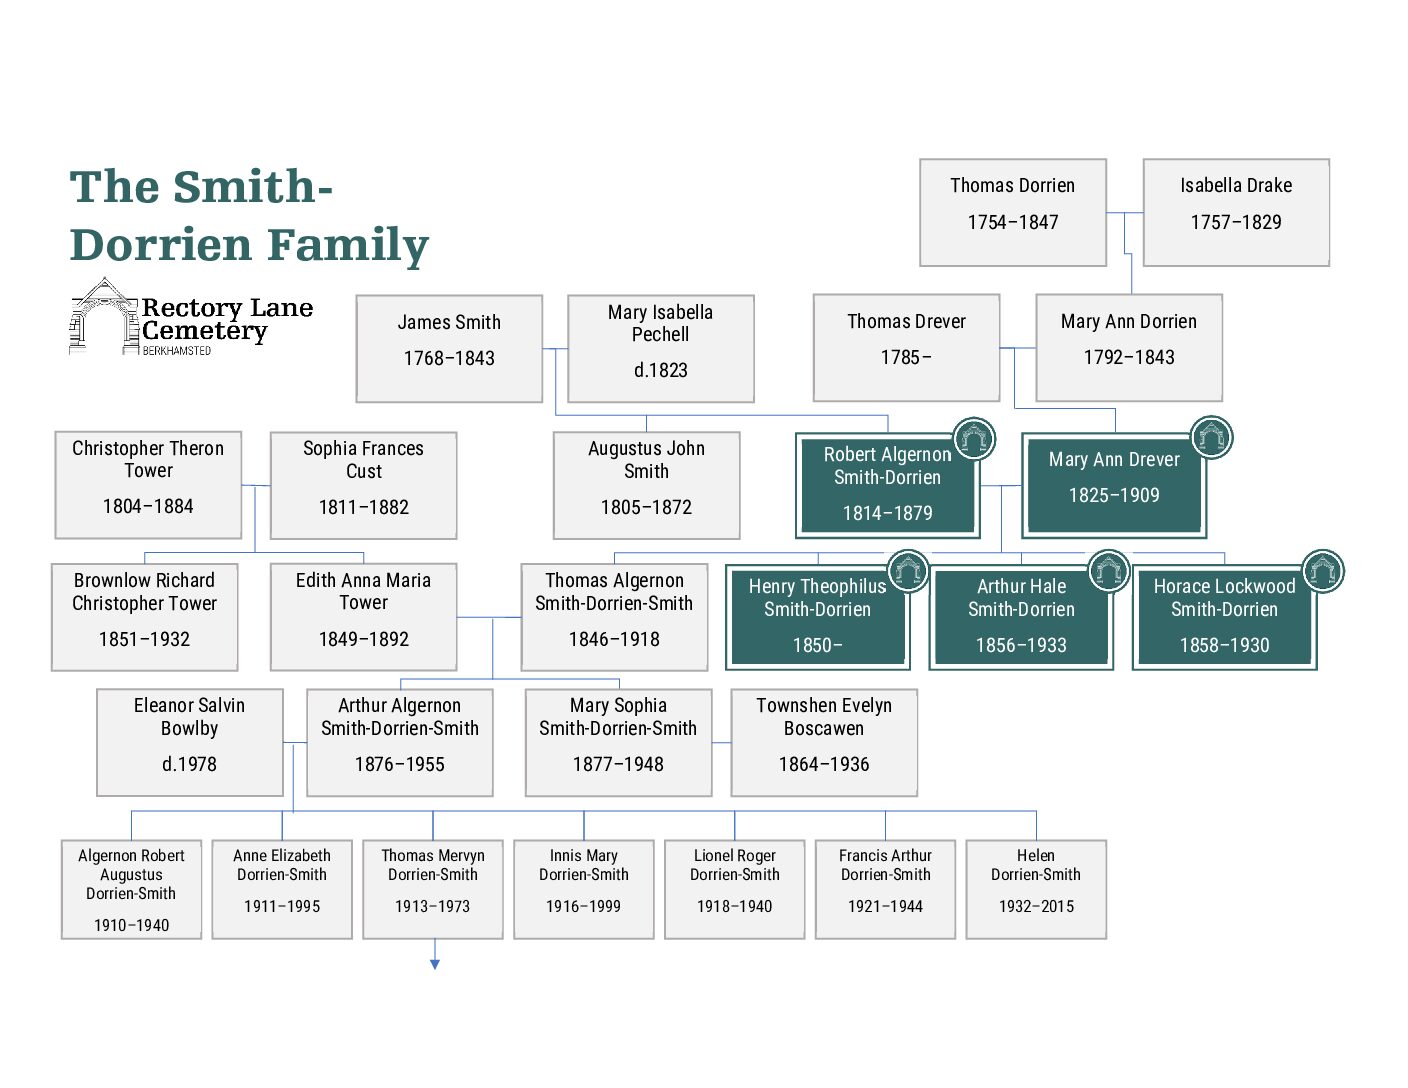 Smith-Dorrien family tree